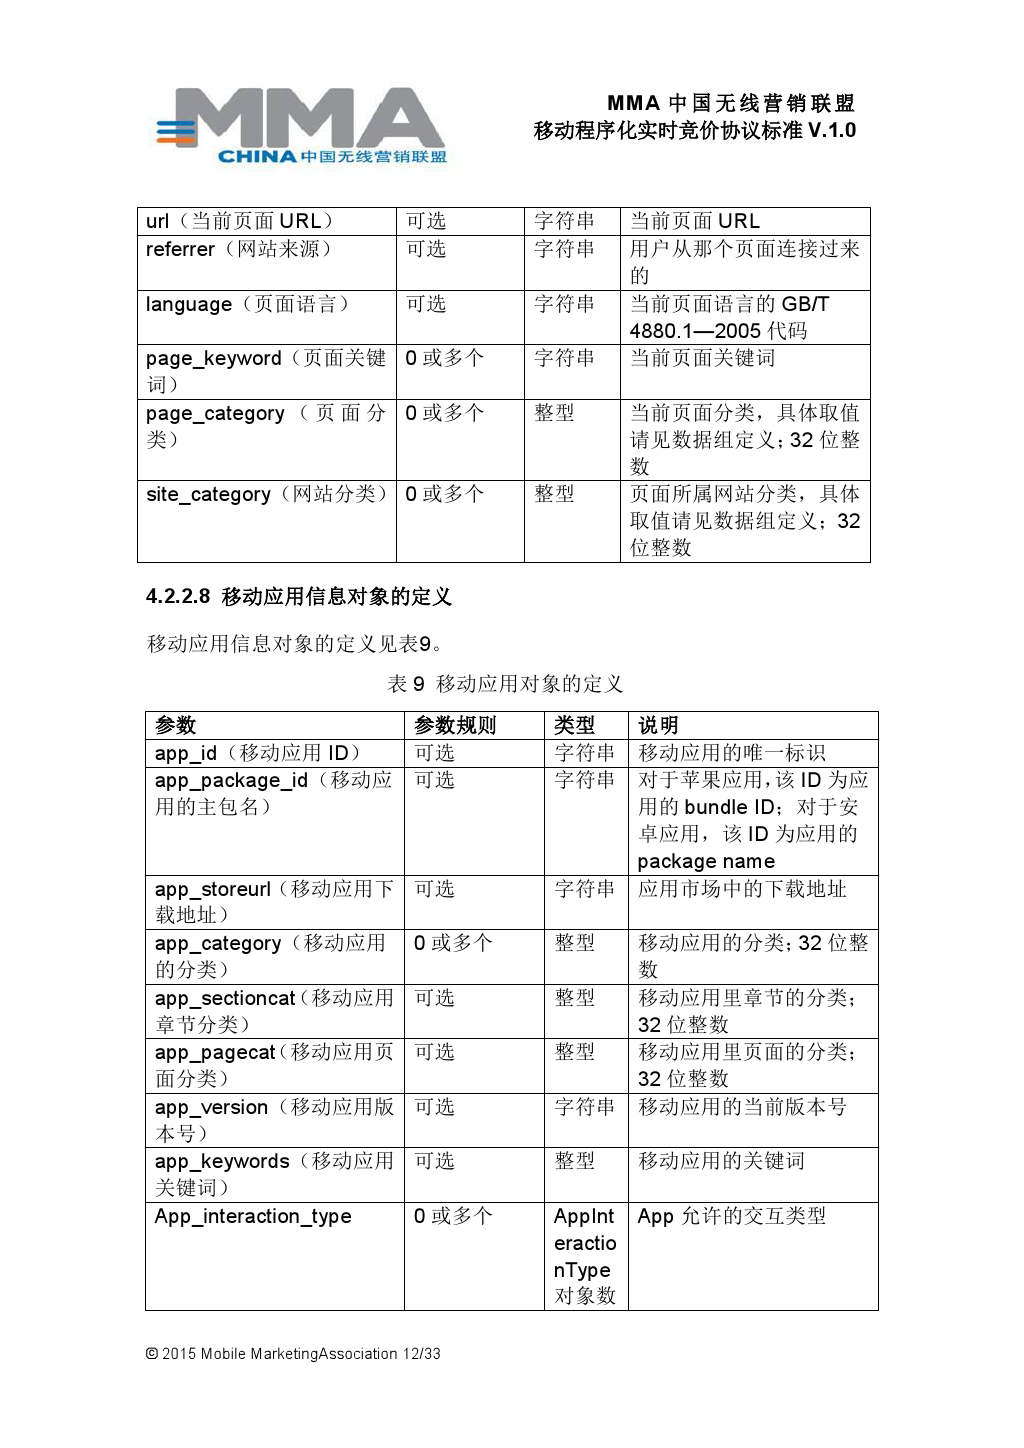 MMA中国无线营销联盟移动程序化实时竞价协议标准V.1.0_000013